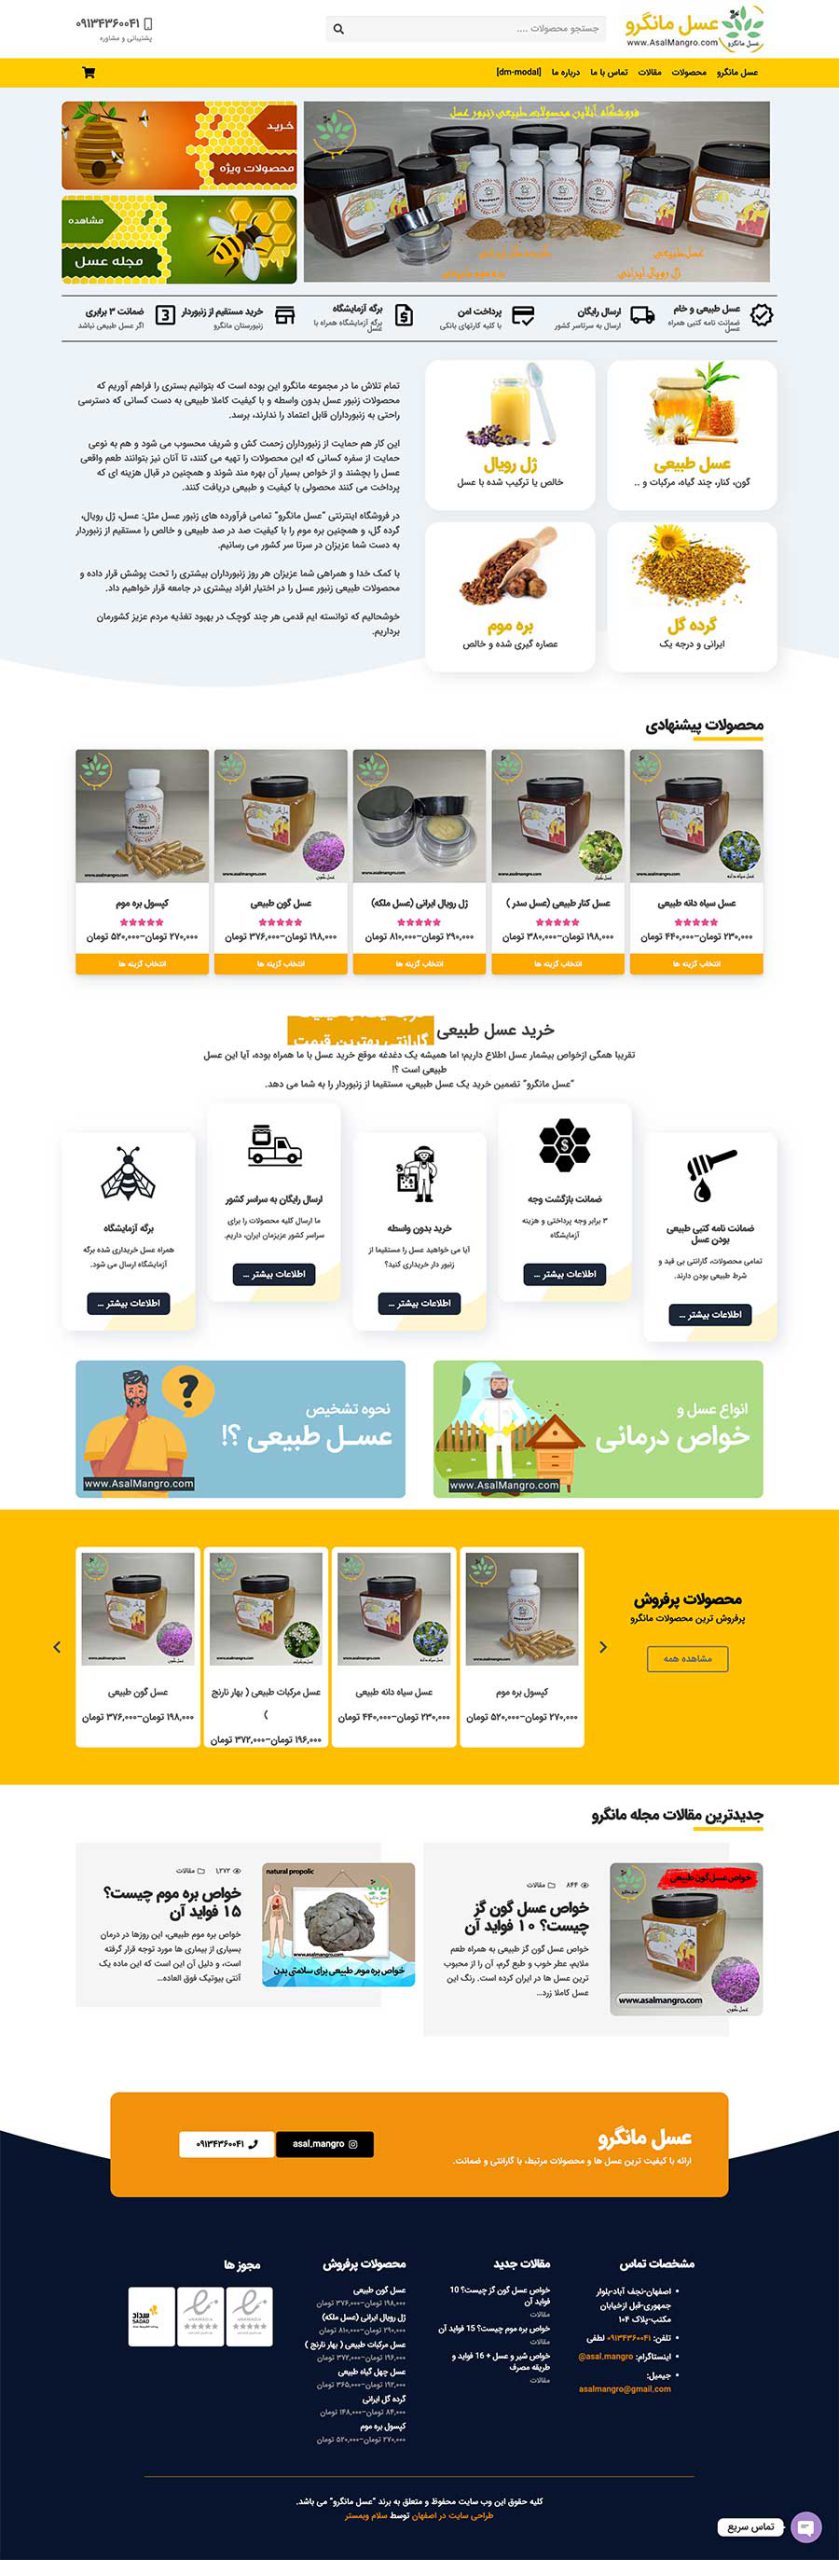 عکس صفحه نخست سایت فروش اینترنتی عسل، طراحی شده توسط hiwebmaster.org